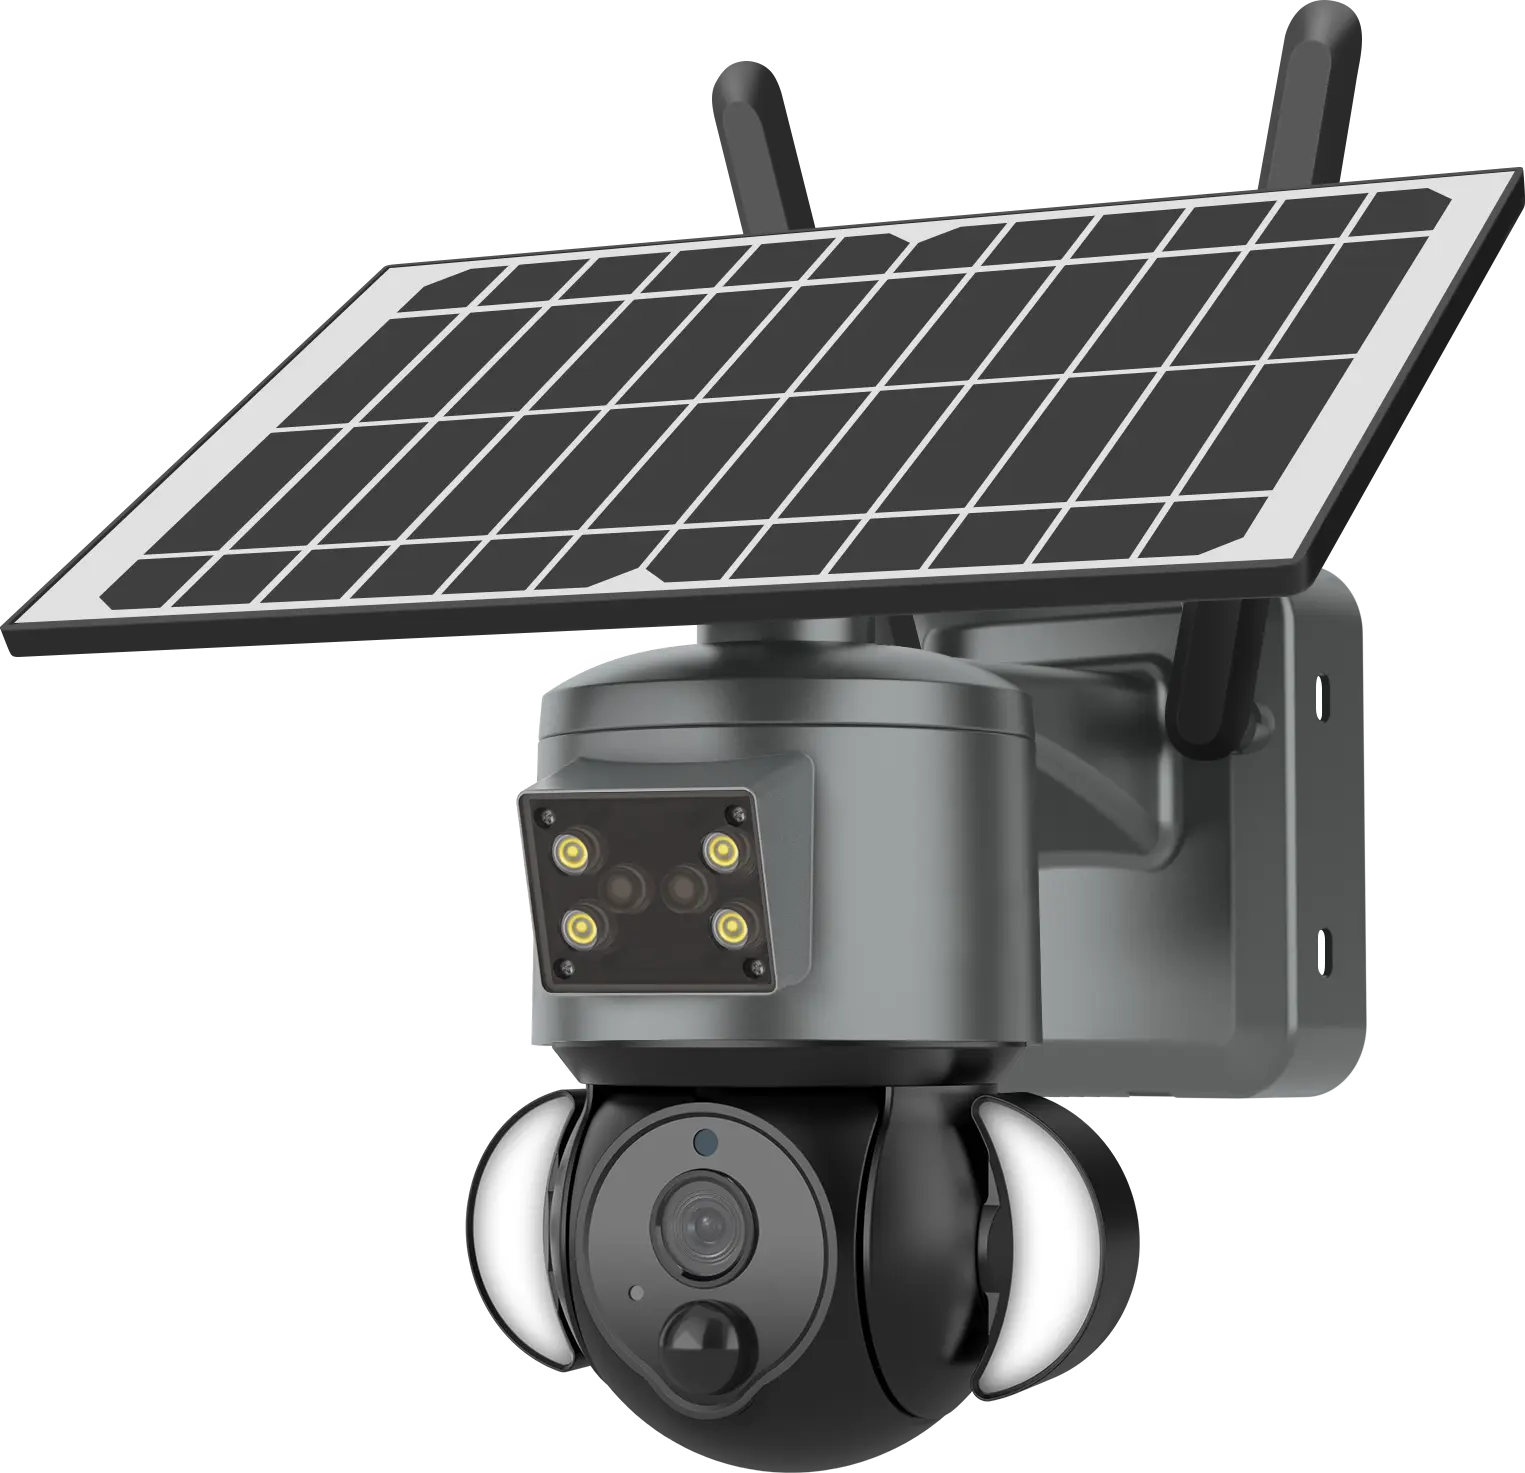 2023 Regis vendita calda casa all'aperto telecamera di rete 3MP sistema di sicurezza telecamera di sorveglianza solare